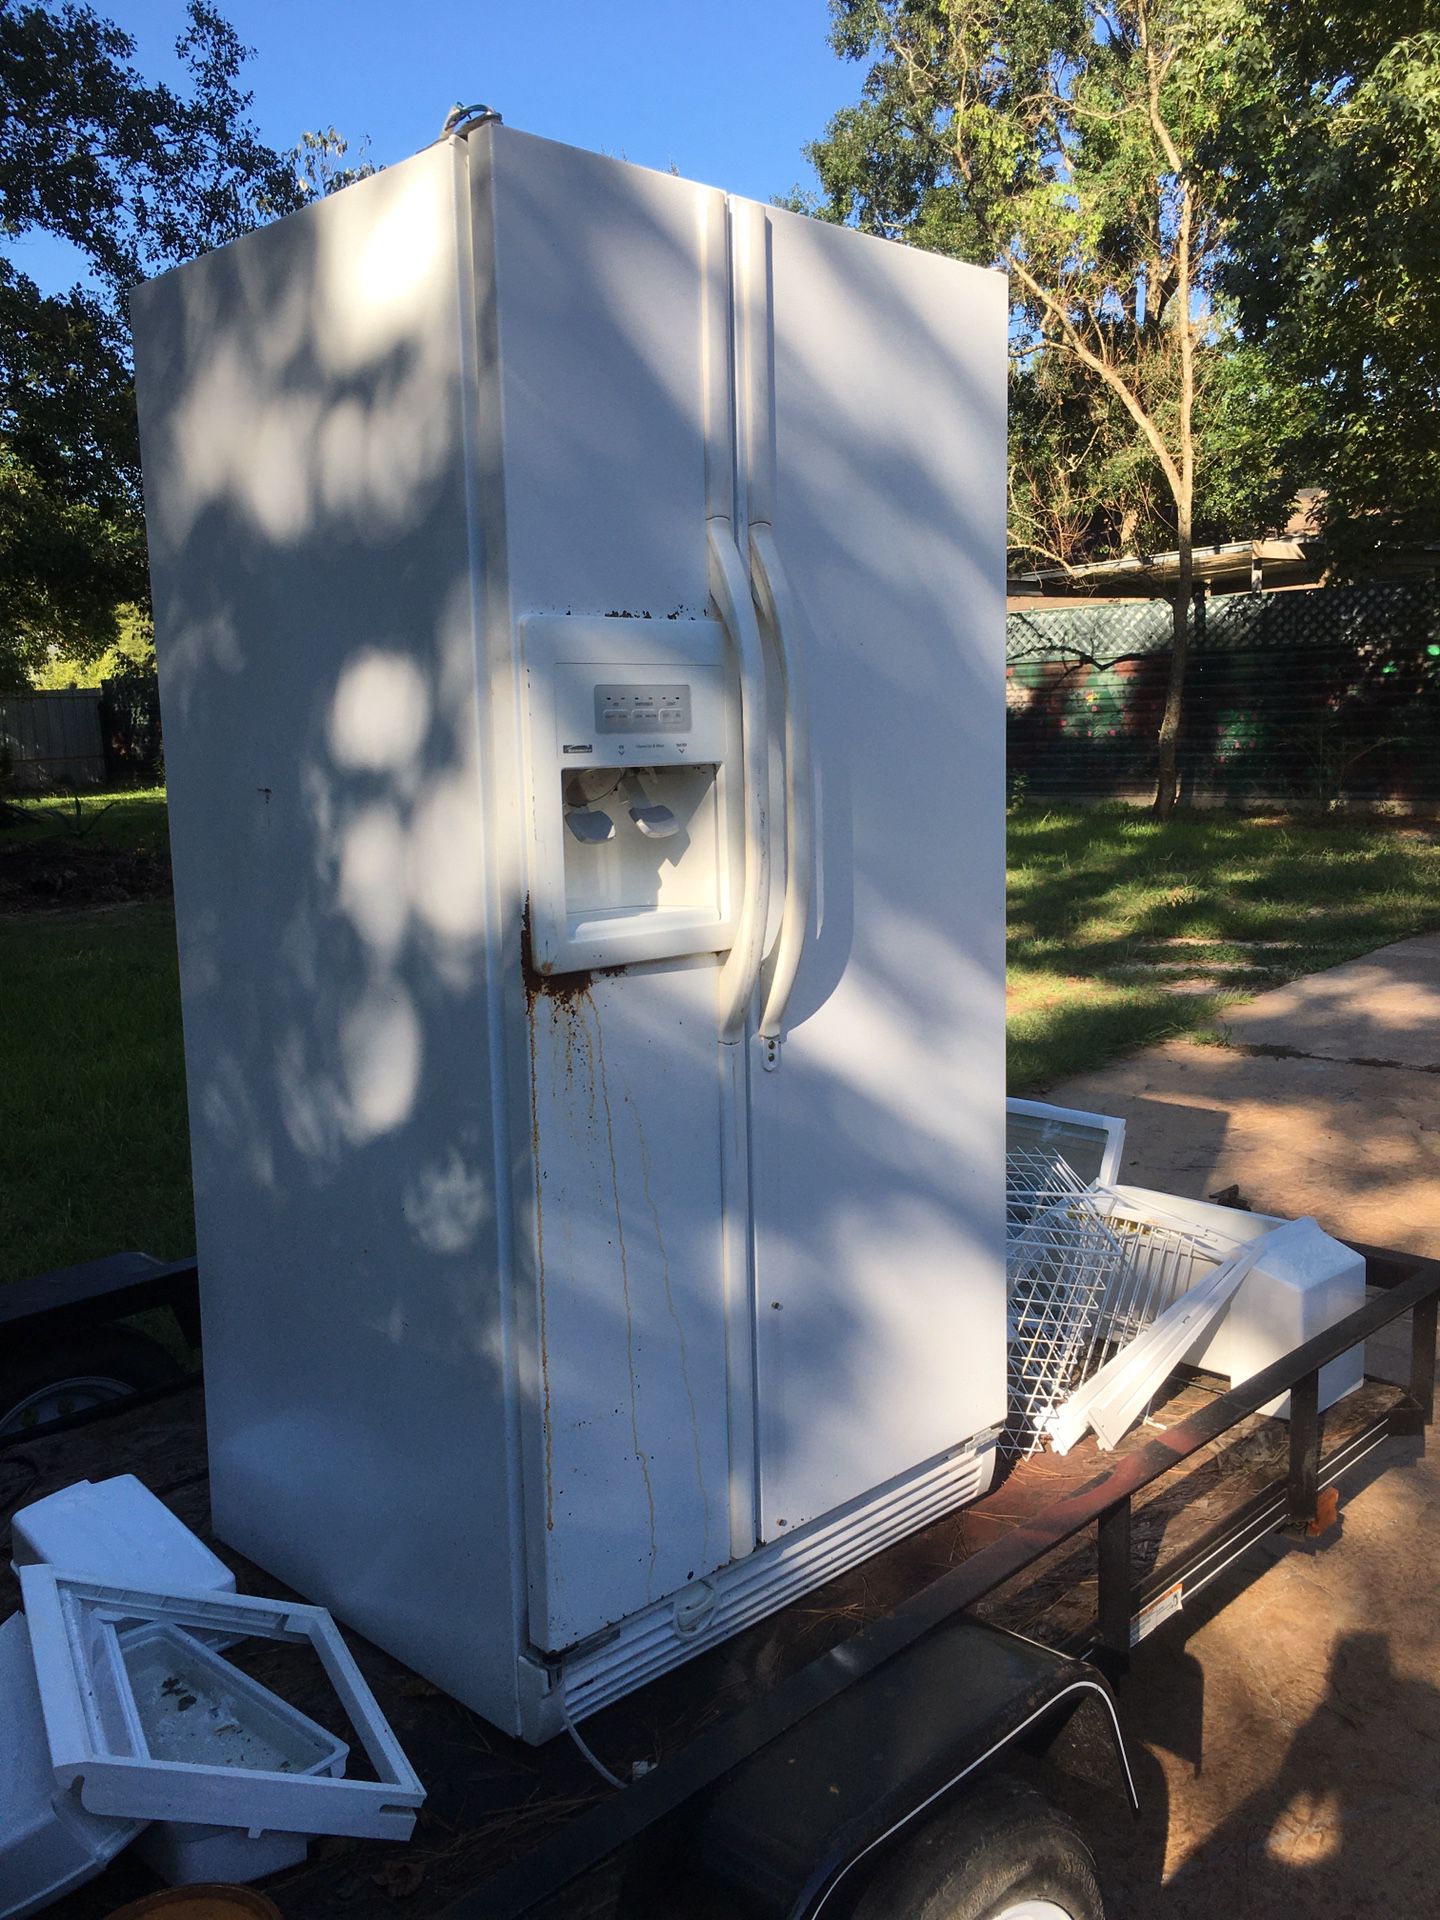 Refrigerador Old But Works 🙂